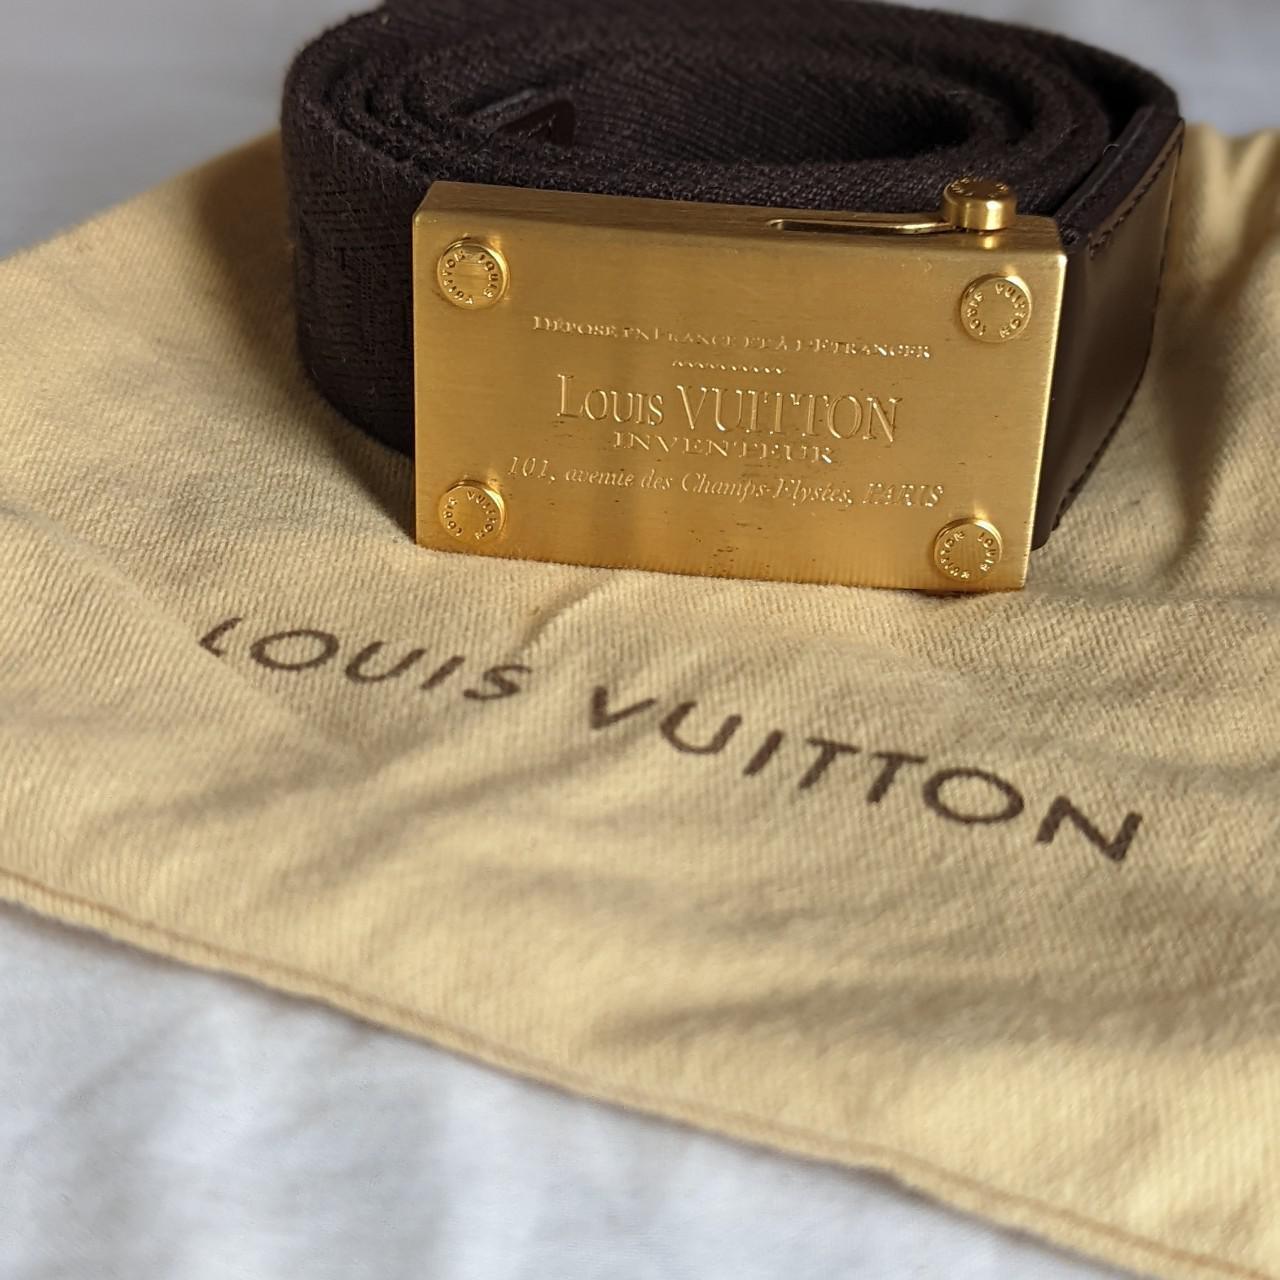 Louis Vuitton belt used a few times, still in great - Depop